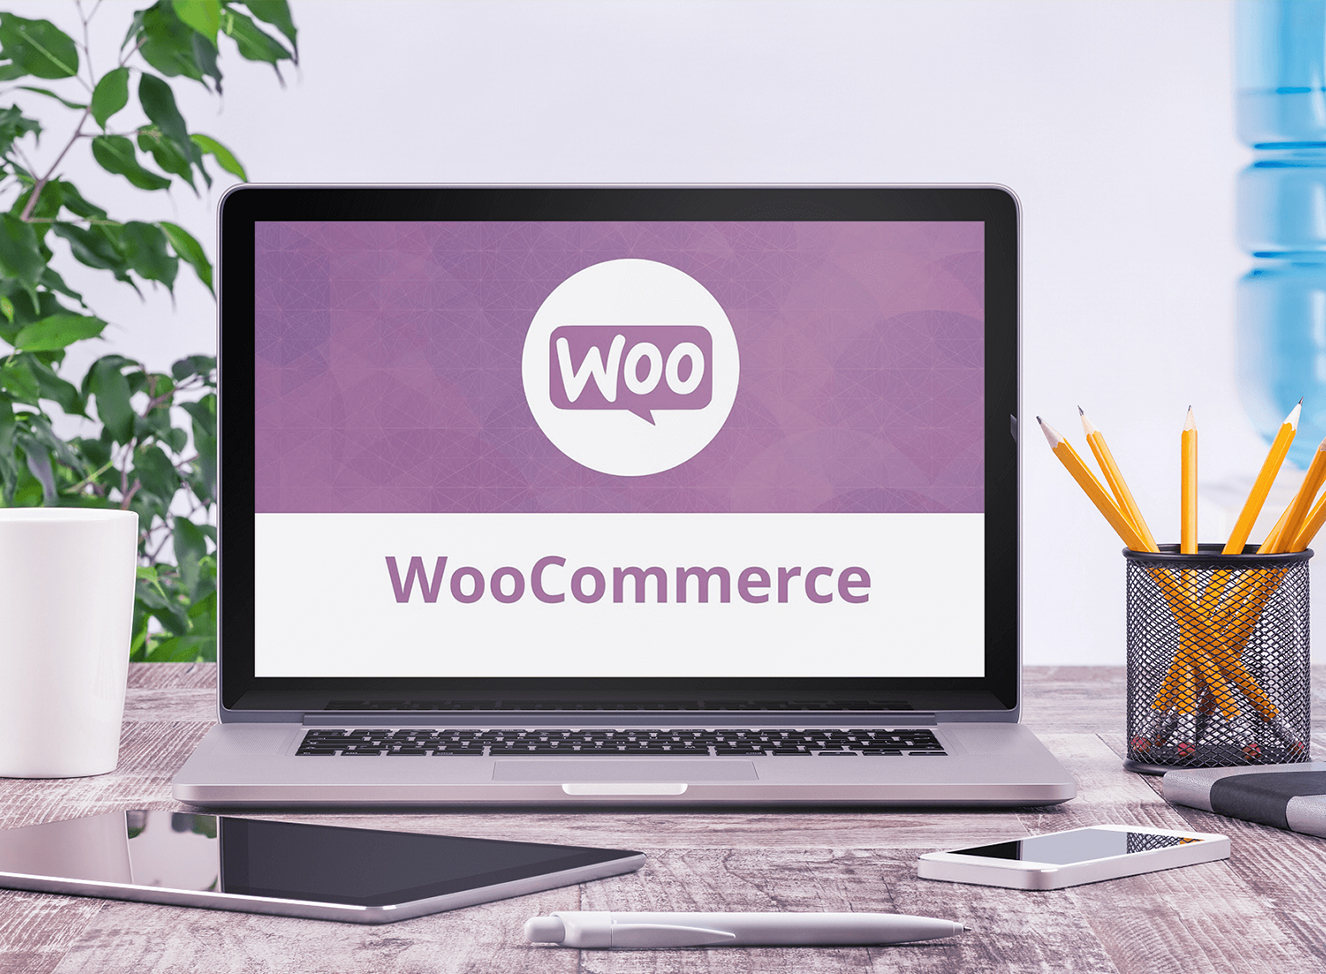 Woo-commerce Development